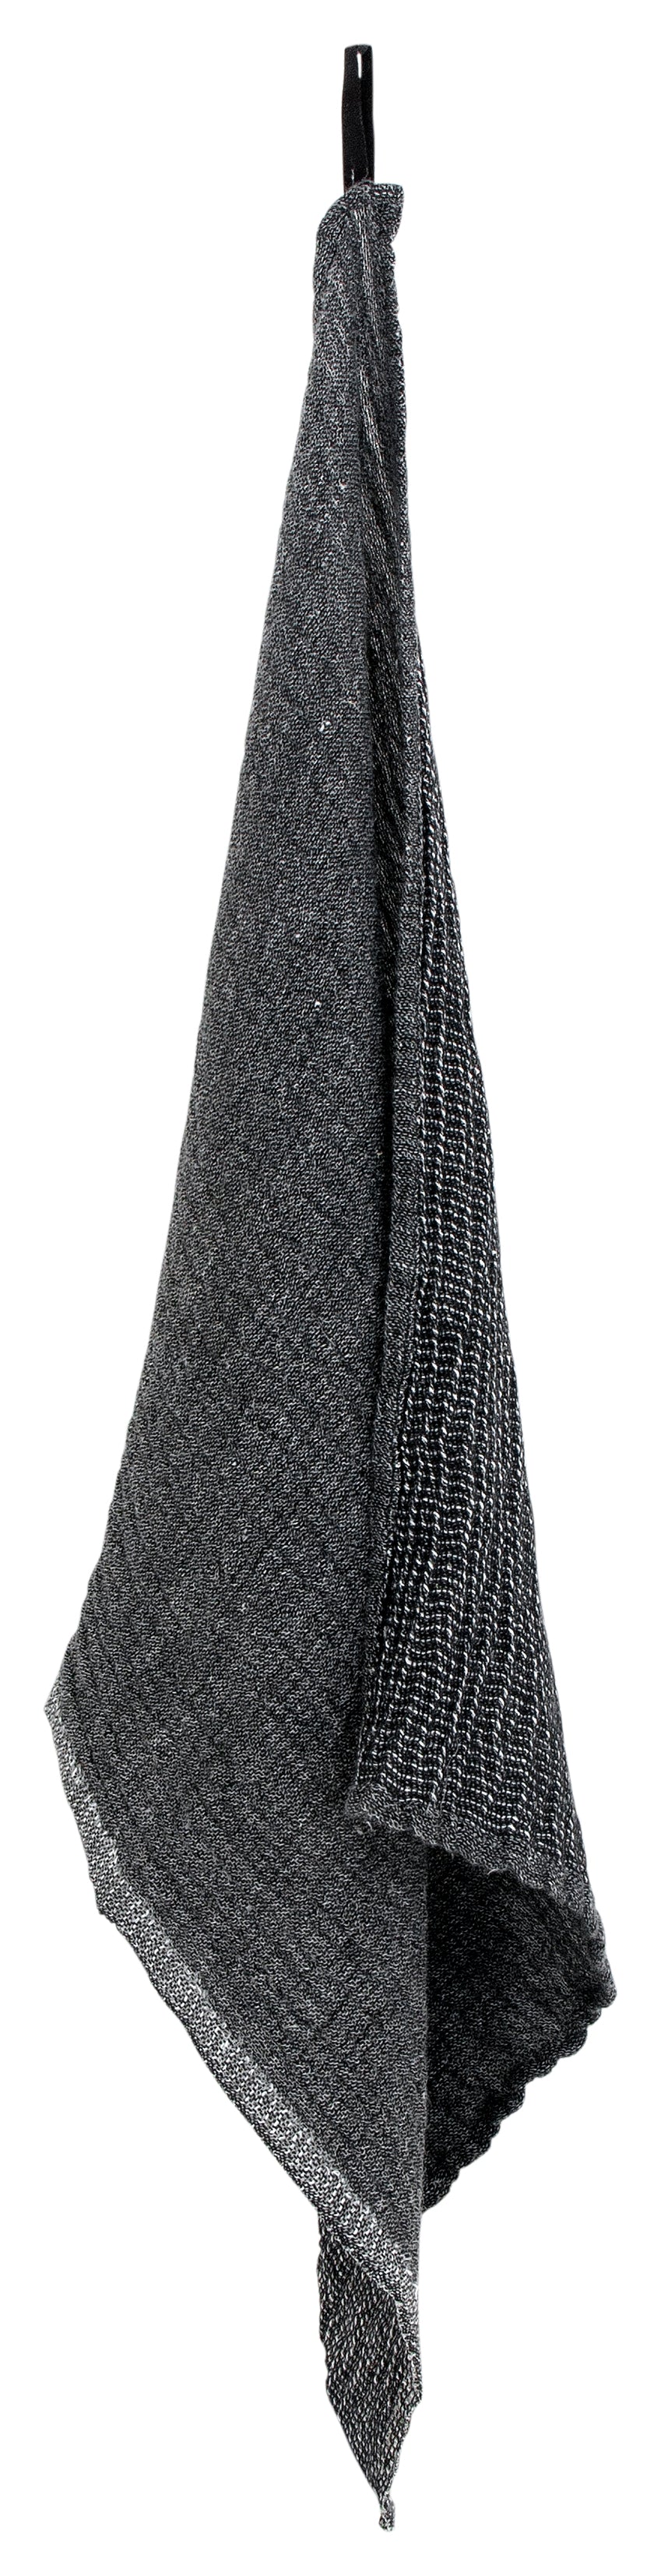 NYYTTI towel, black-grey